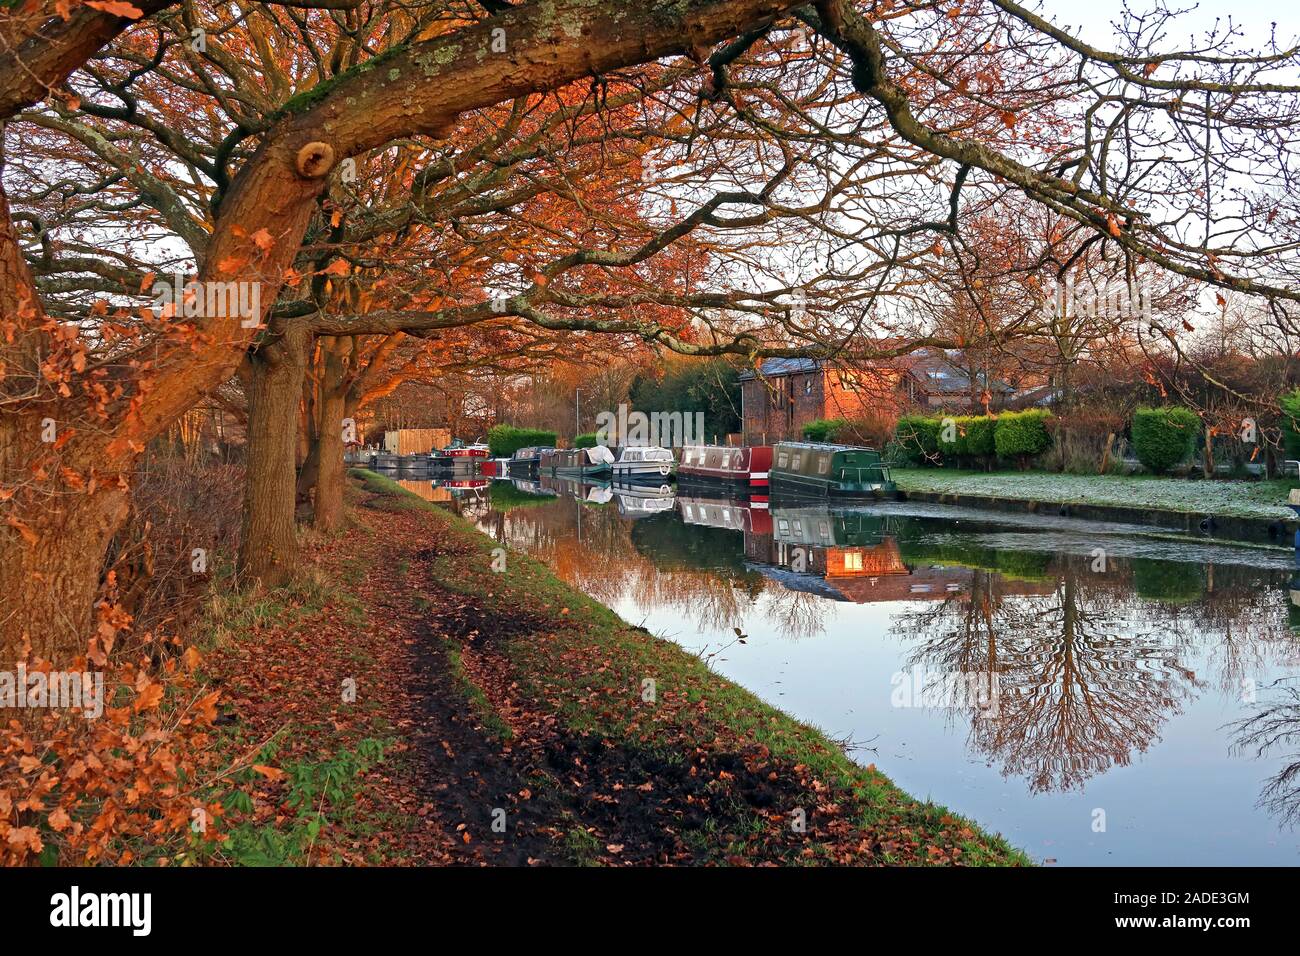 Massey Brook à l'automne, chemin de halage du canal Bridgewater, entre les villages de Thelwall et Lymm, Warrington, Cheshire, Angleterre, Royaume-Uni Banque D'Images